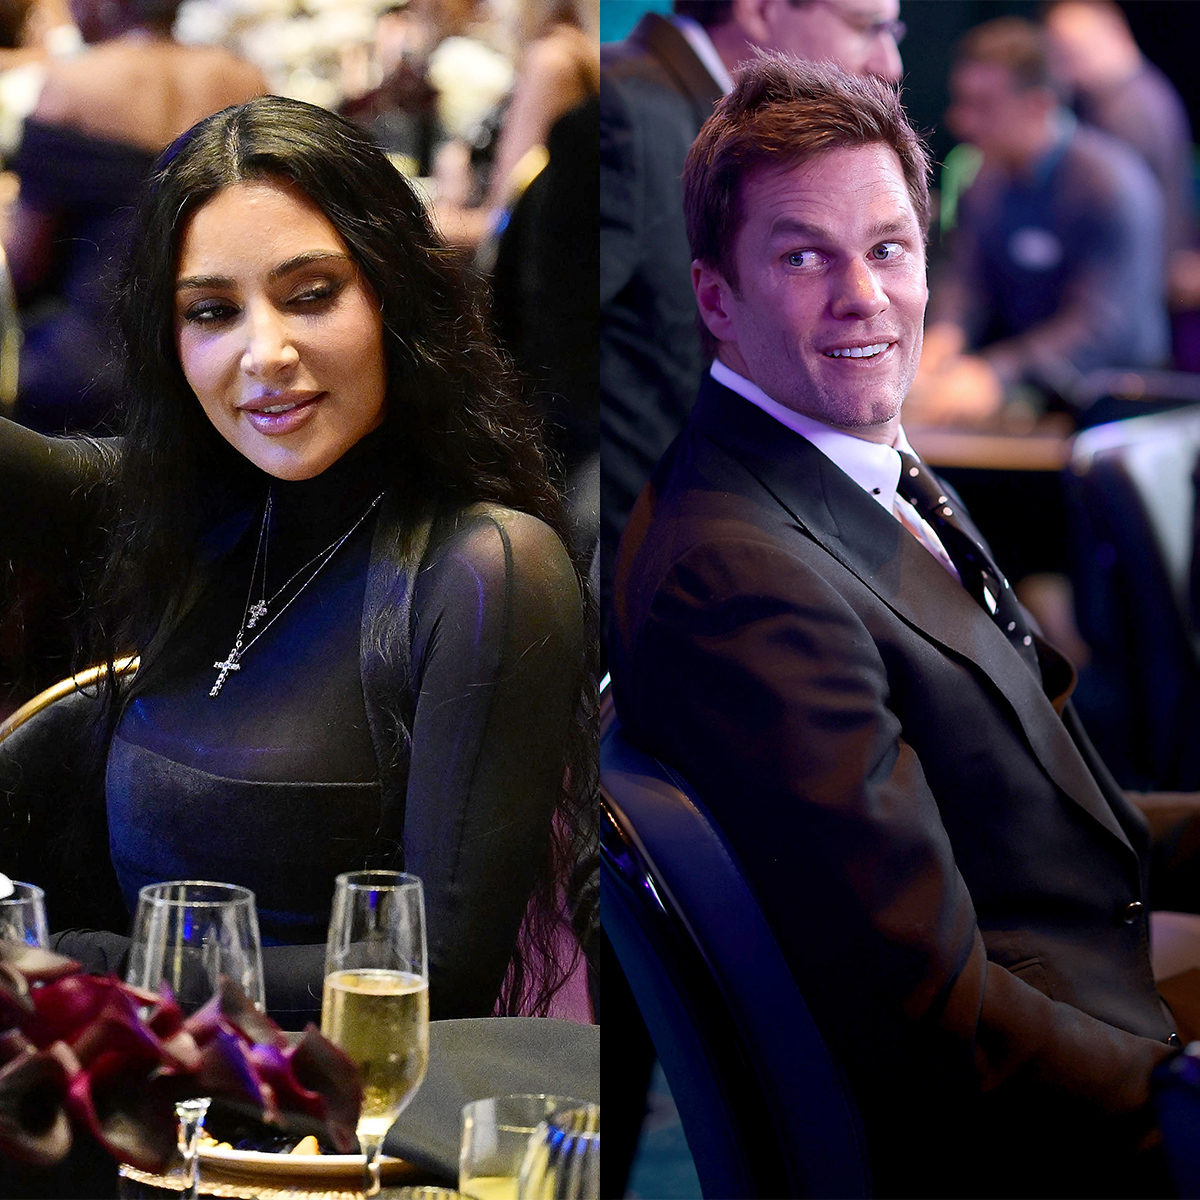 Kim Kardashian, Tom Brady Face Off in Bidding War at Charity Event